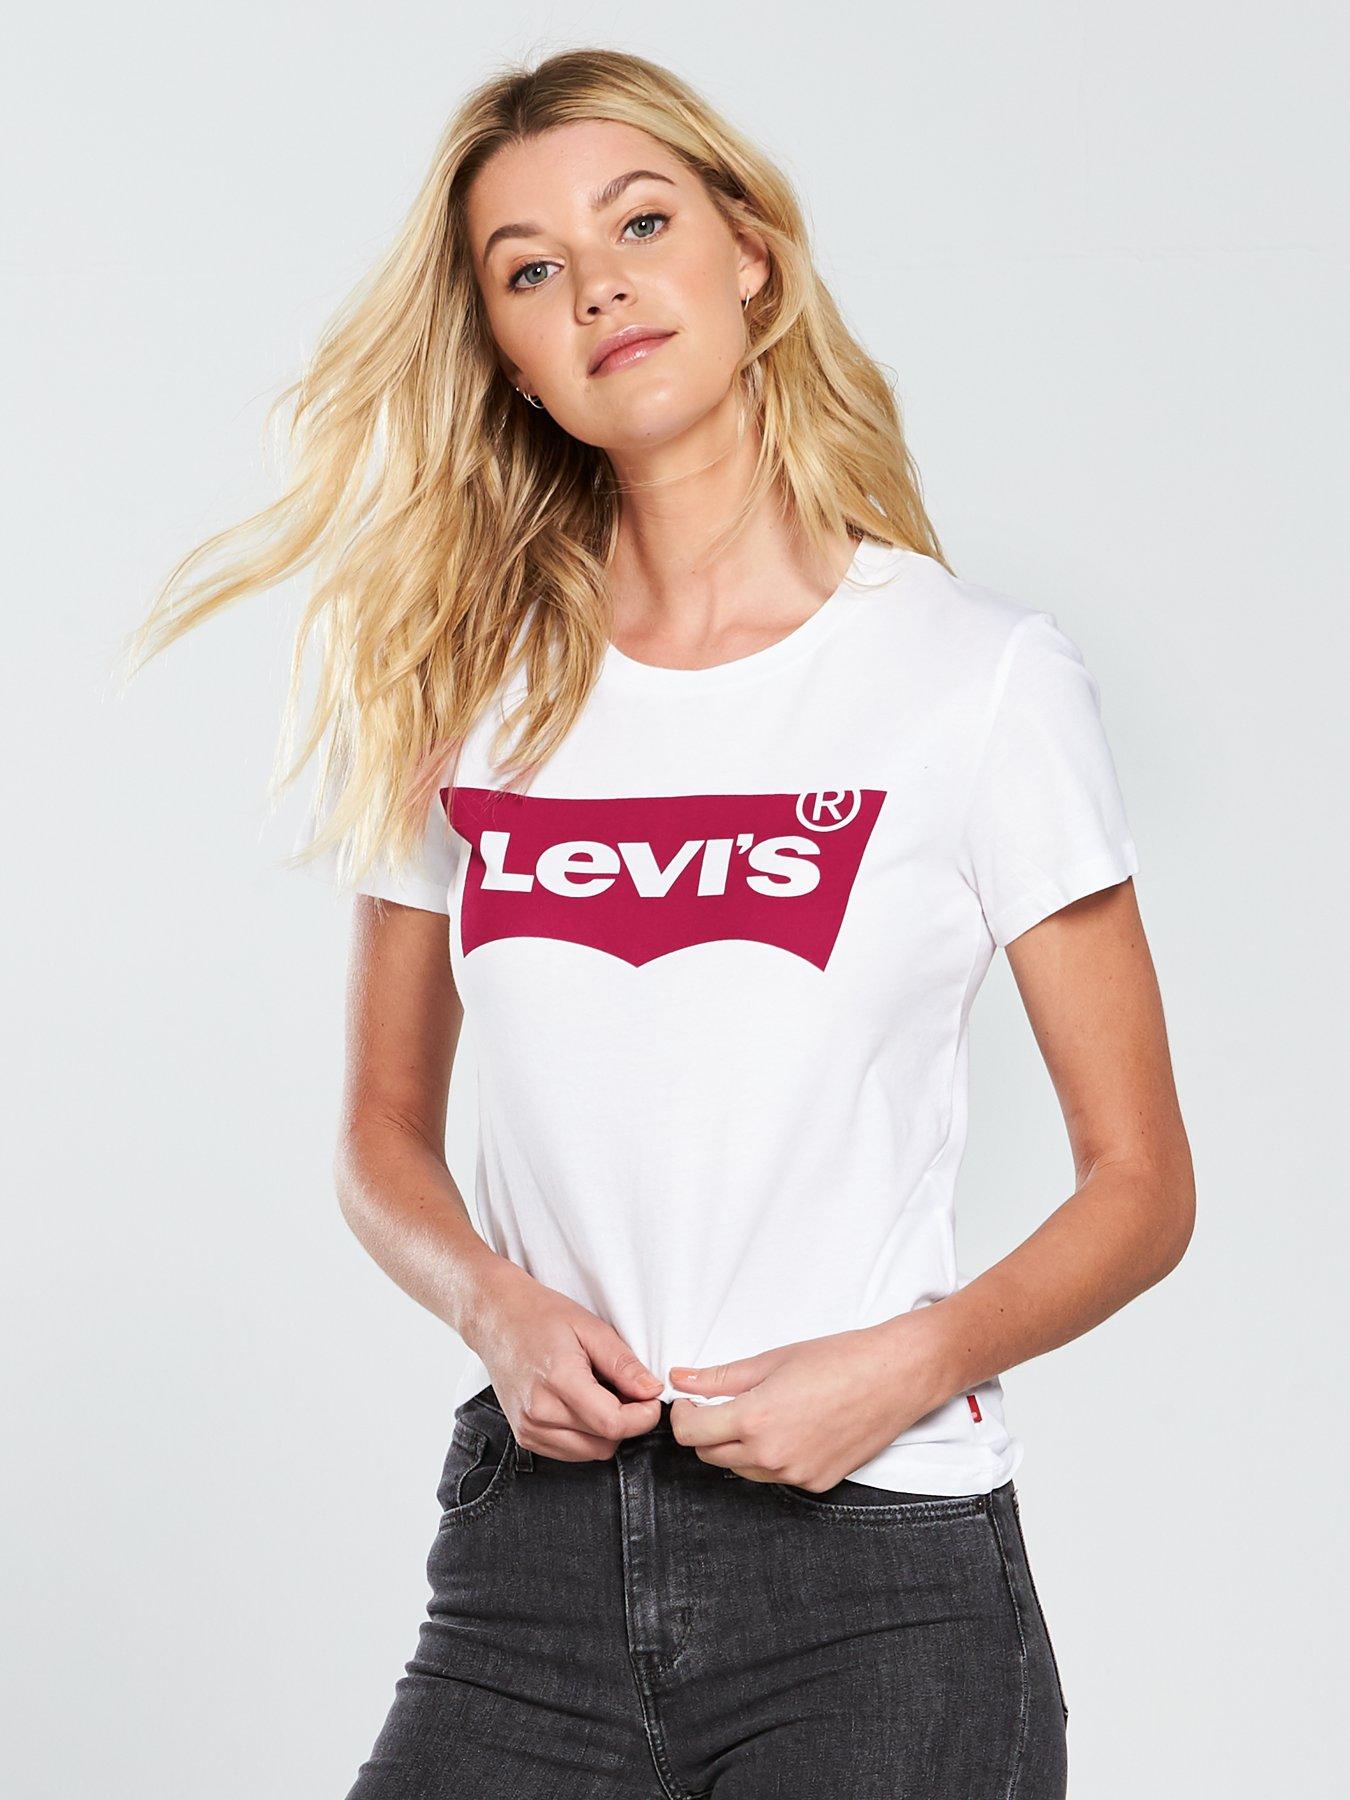 levi's white t shirt